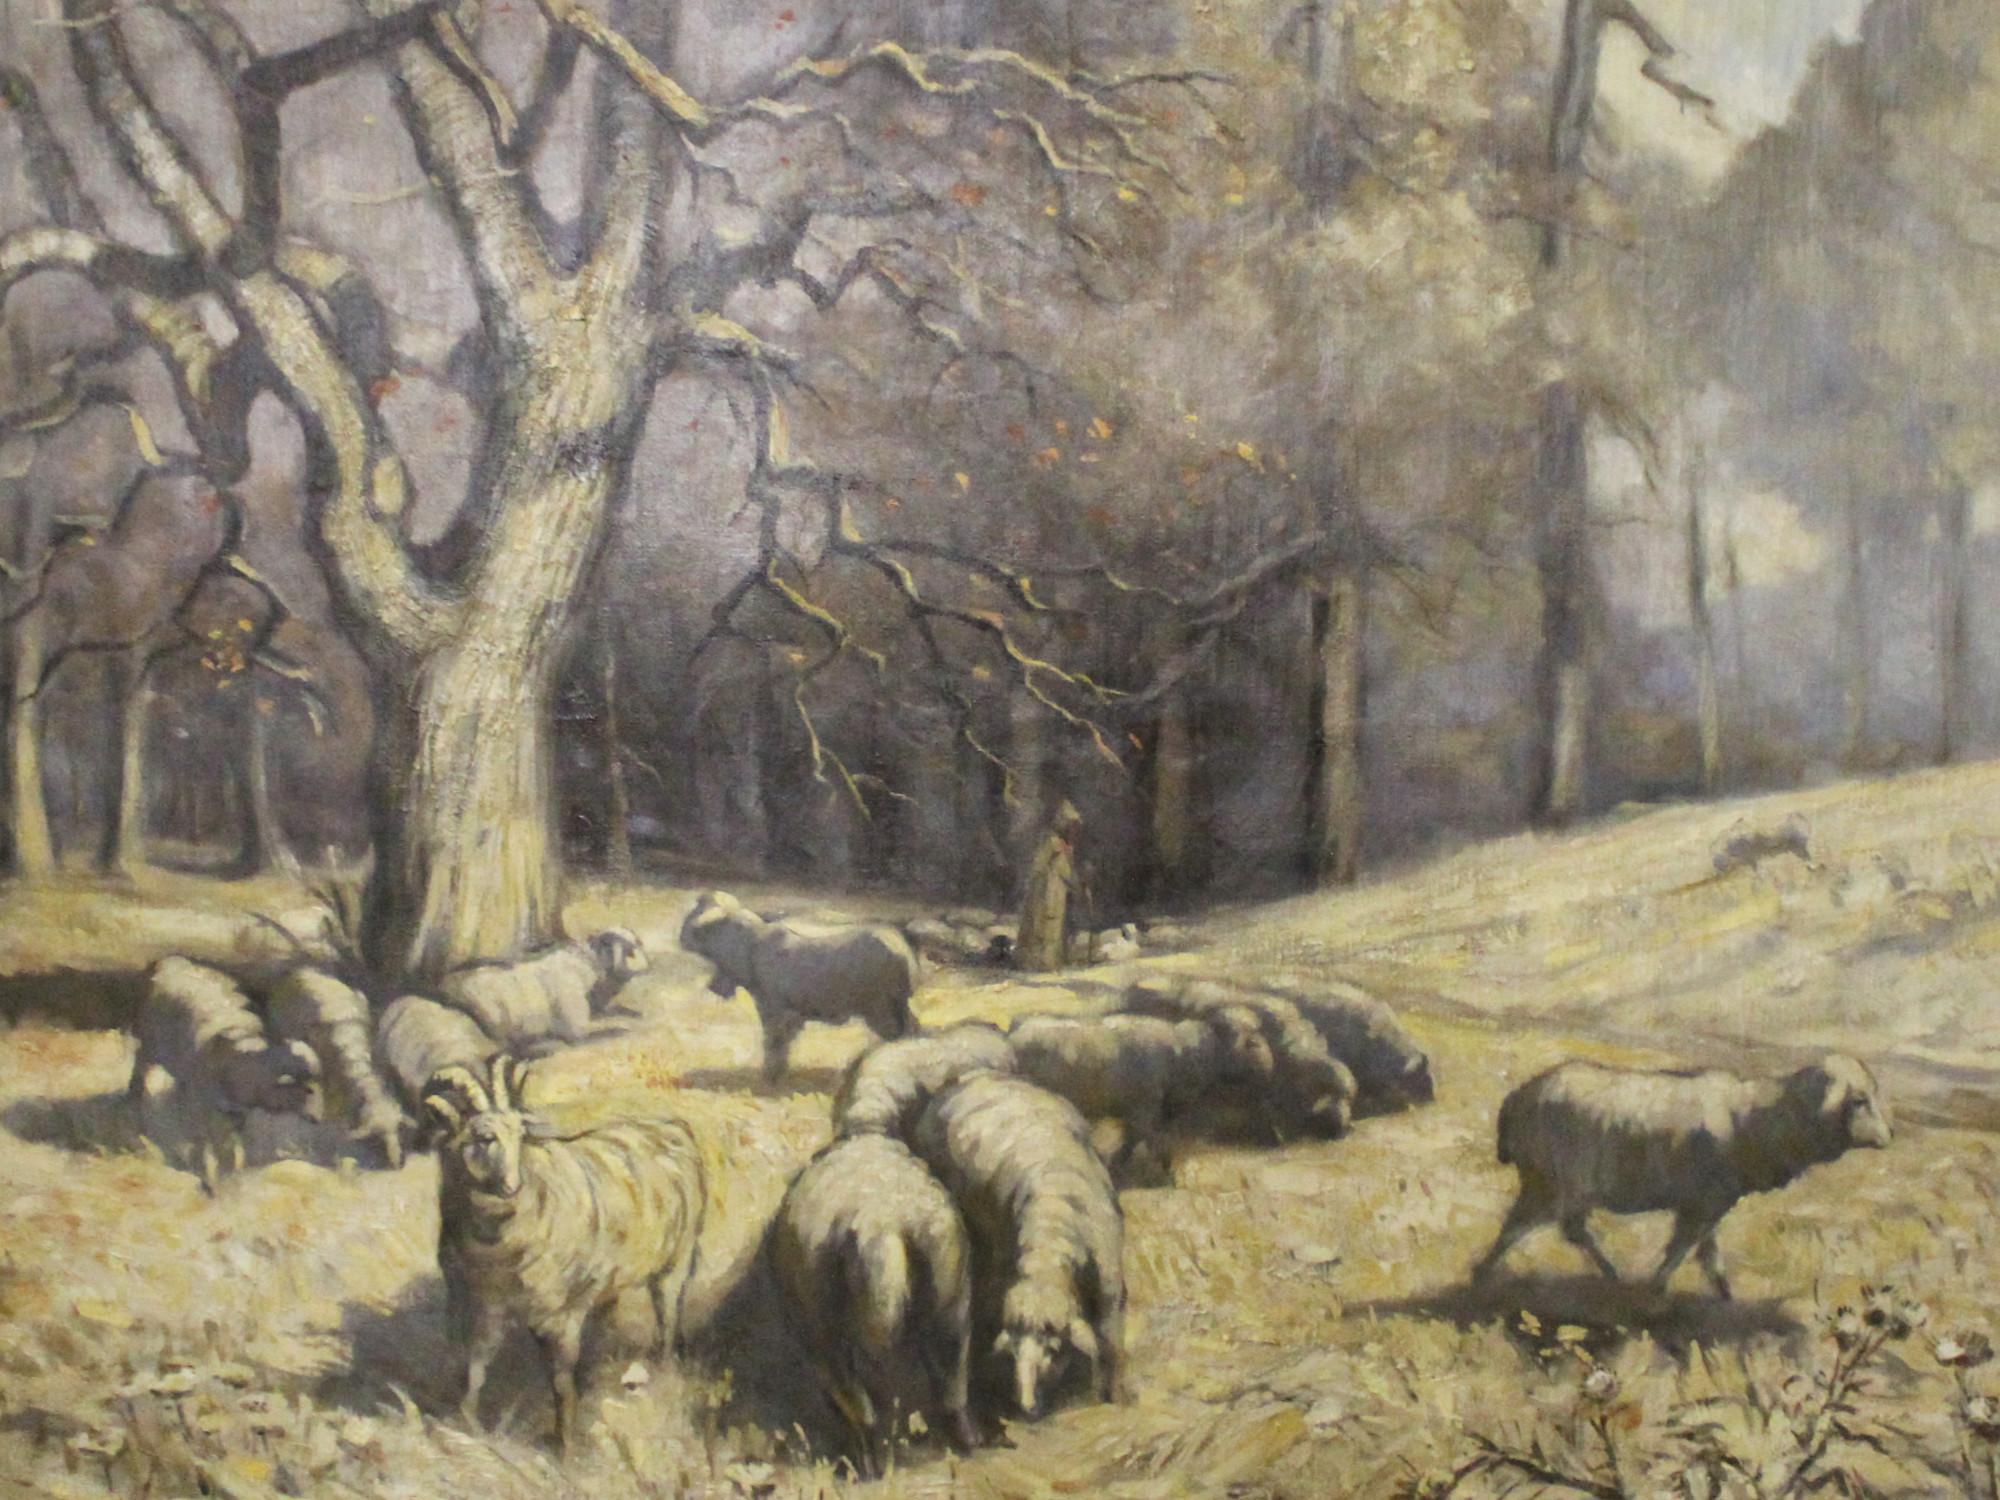 Bárányát terelő pásztor - Przudzik József (1926-2019) (PG-0299) - Pápai Galéria